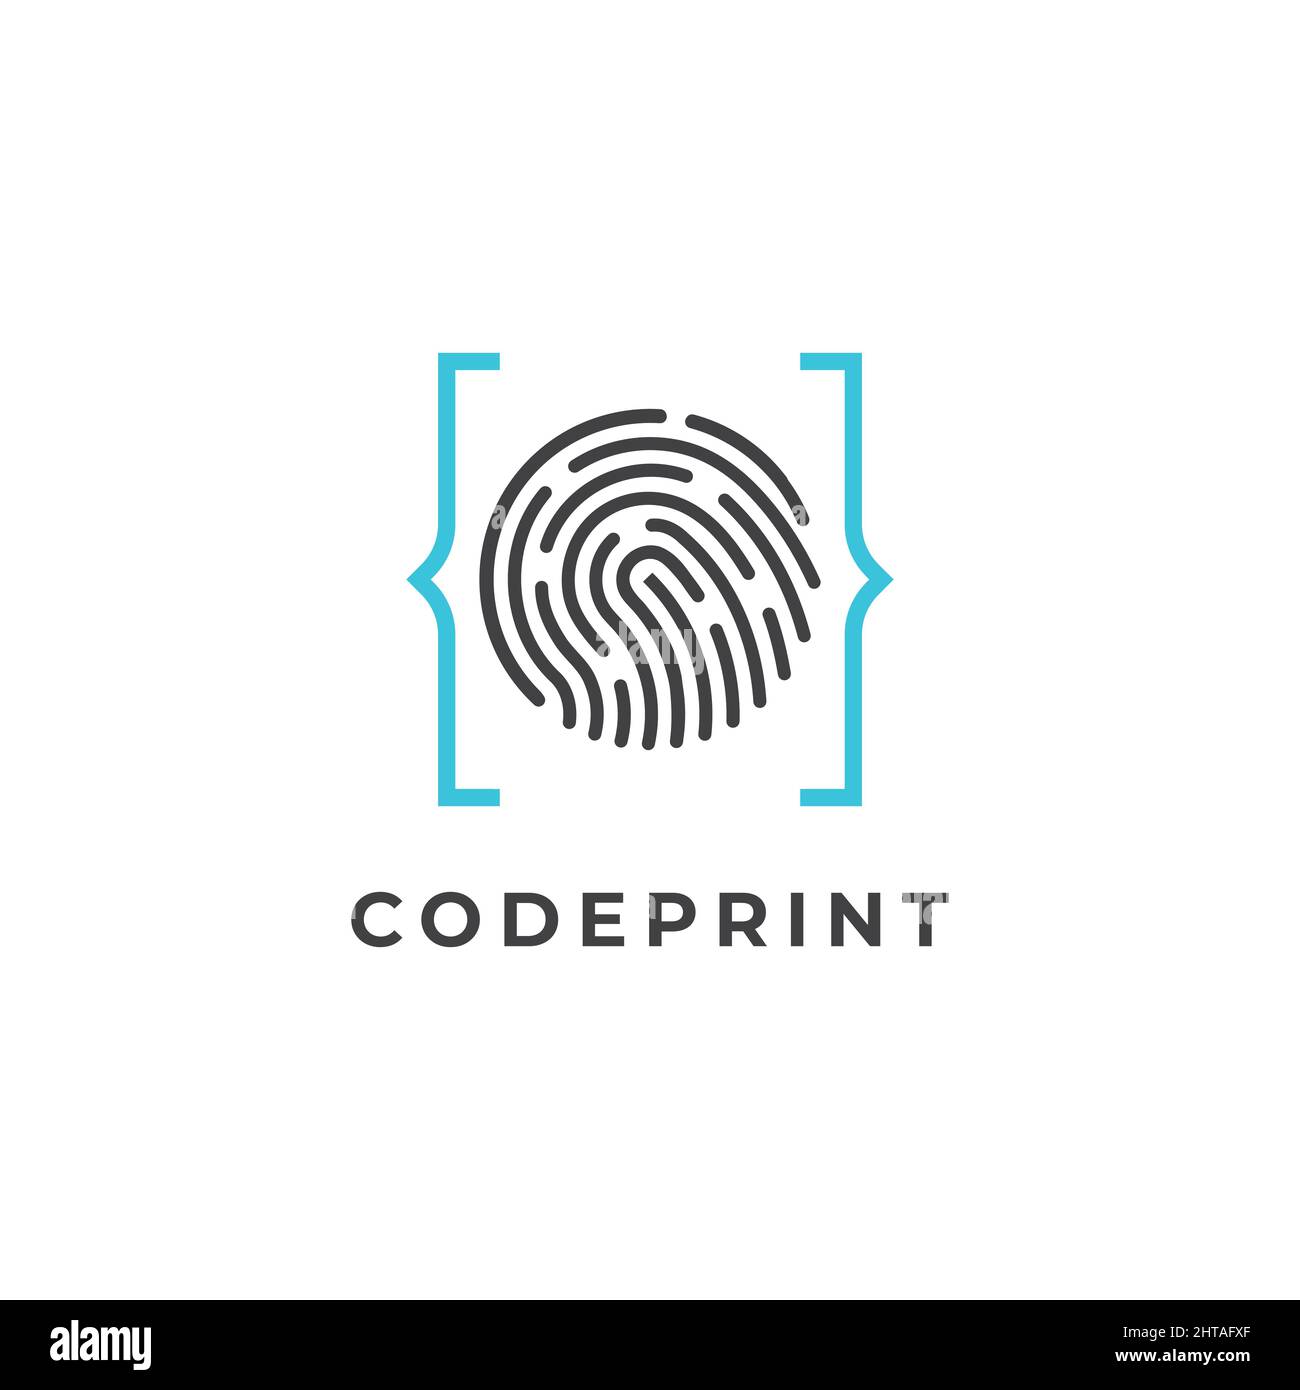 Finger print code logo design illustration Stock Vector